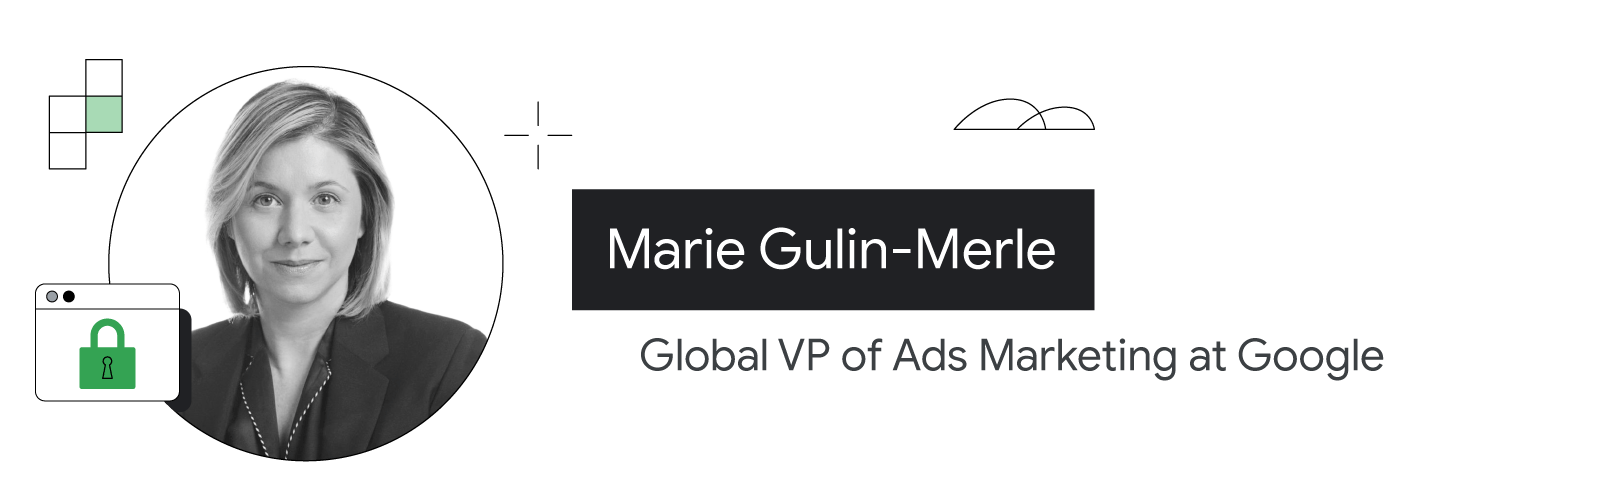 Google'ın reklam pazarlama global başkan yardımcısı Marie Gulin-Merle'in, omuzlarından yukarısı görünecek şekilde fotoğrafına yer verilmiştir. Açık ten rengine sahiptir ve omuz hizasına kadar uzanan sarı saçları vardır. Koyu renkli ceketin altına koyu blu